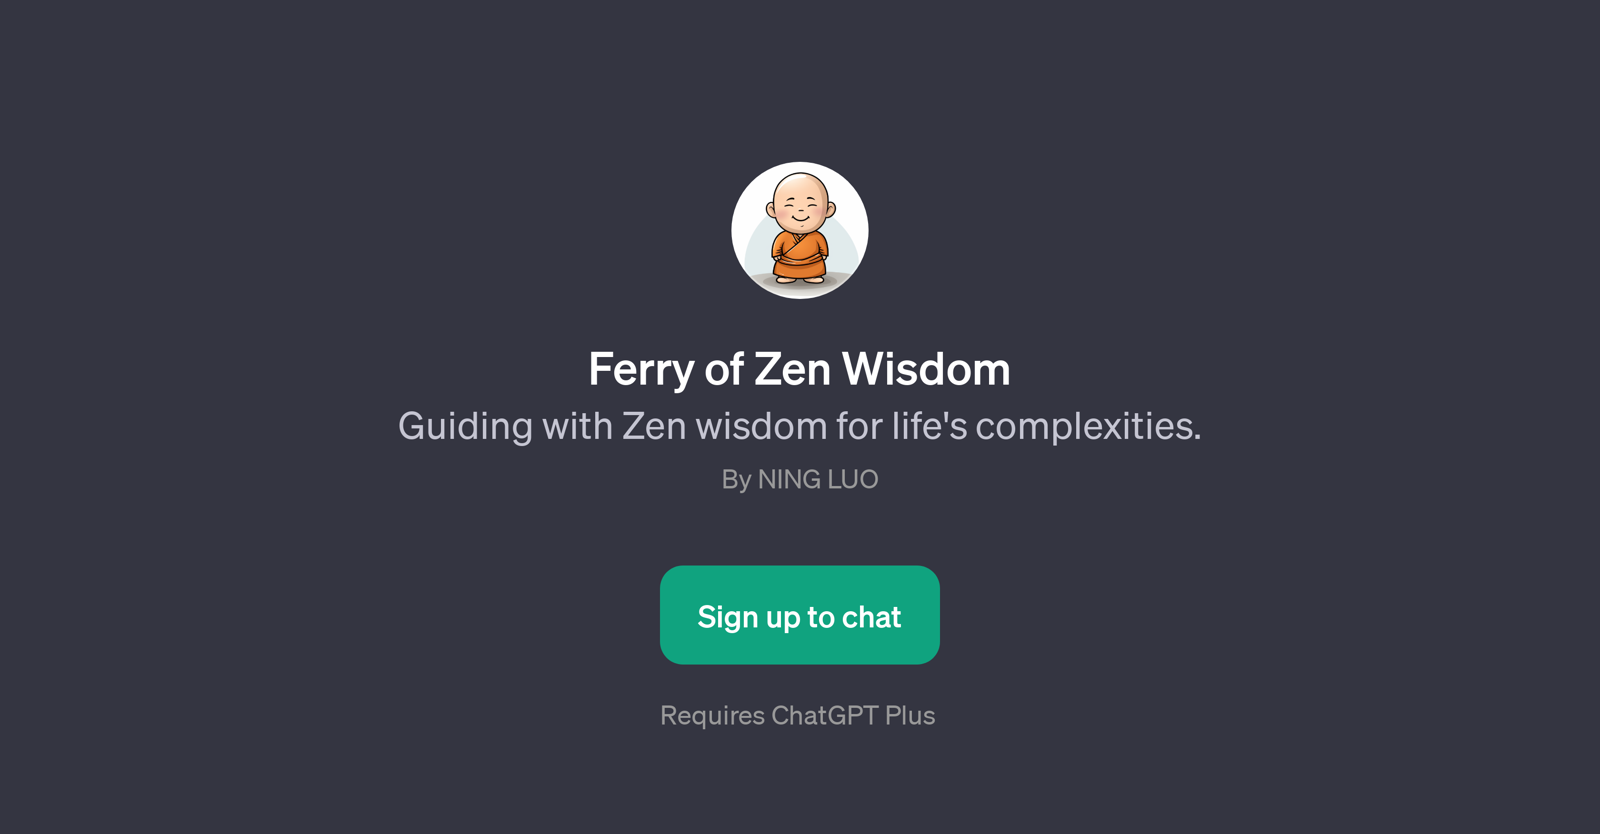 Ferry of Zen Wisdom website